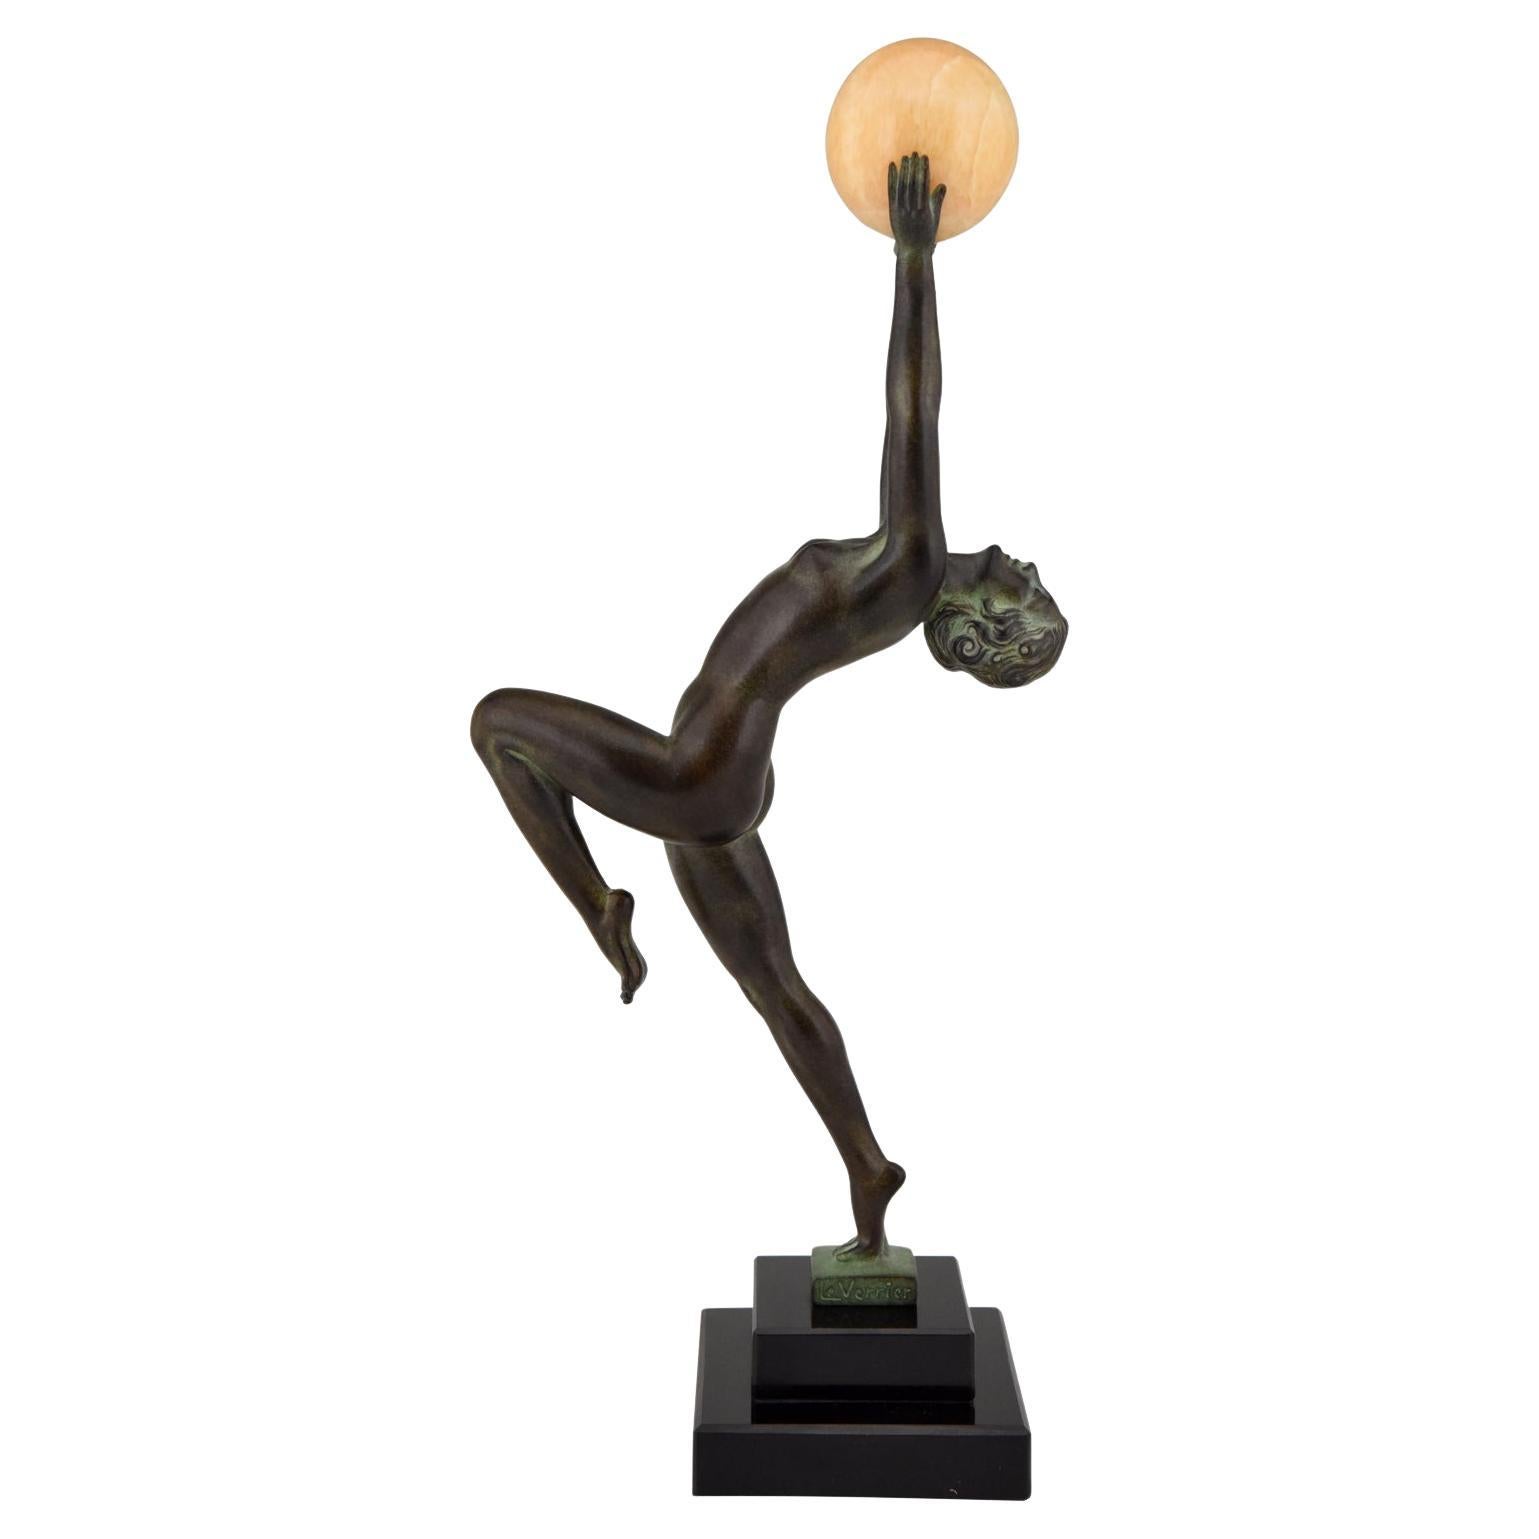 Art Deco style sculpture of a dancer JEU by Max Le Verrier